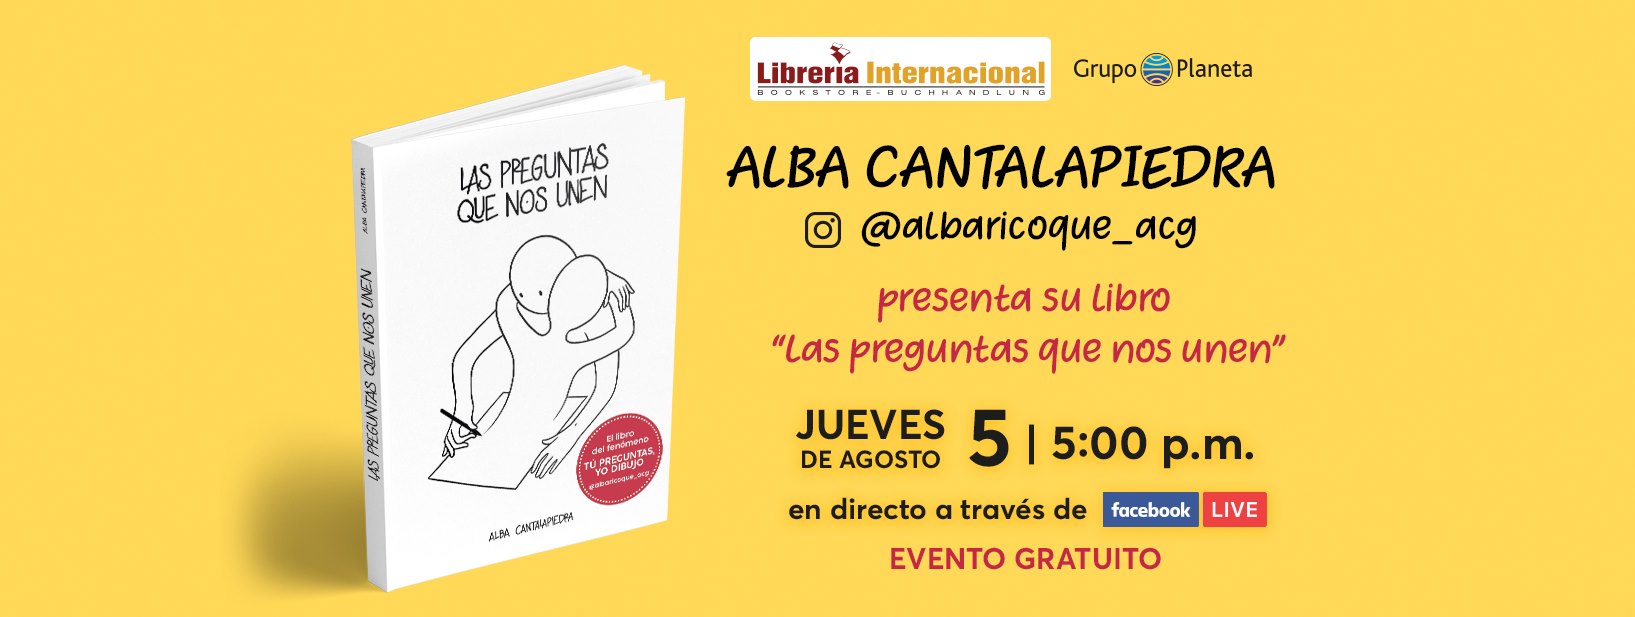 Librería Internacional presenta la obra “Las preguntas que nos unen” con su autora Alba Cantalapiedr